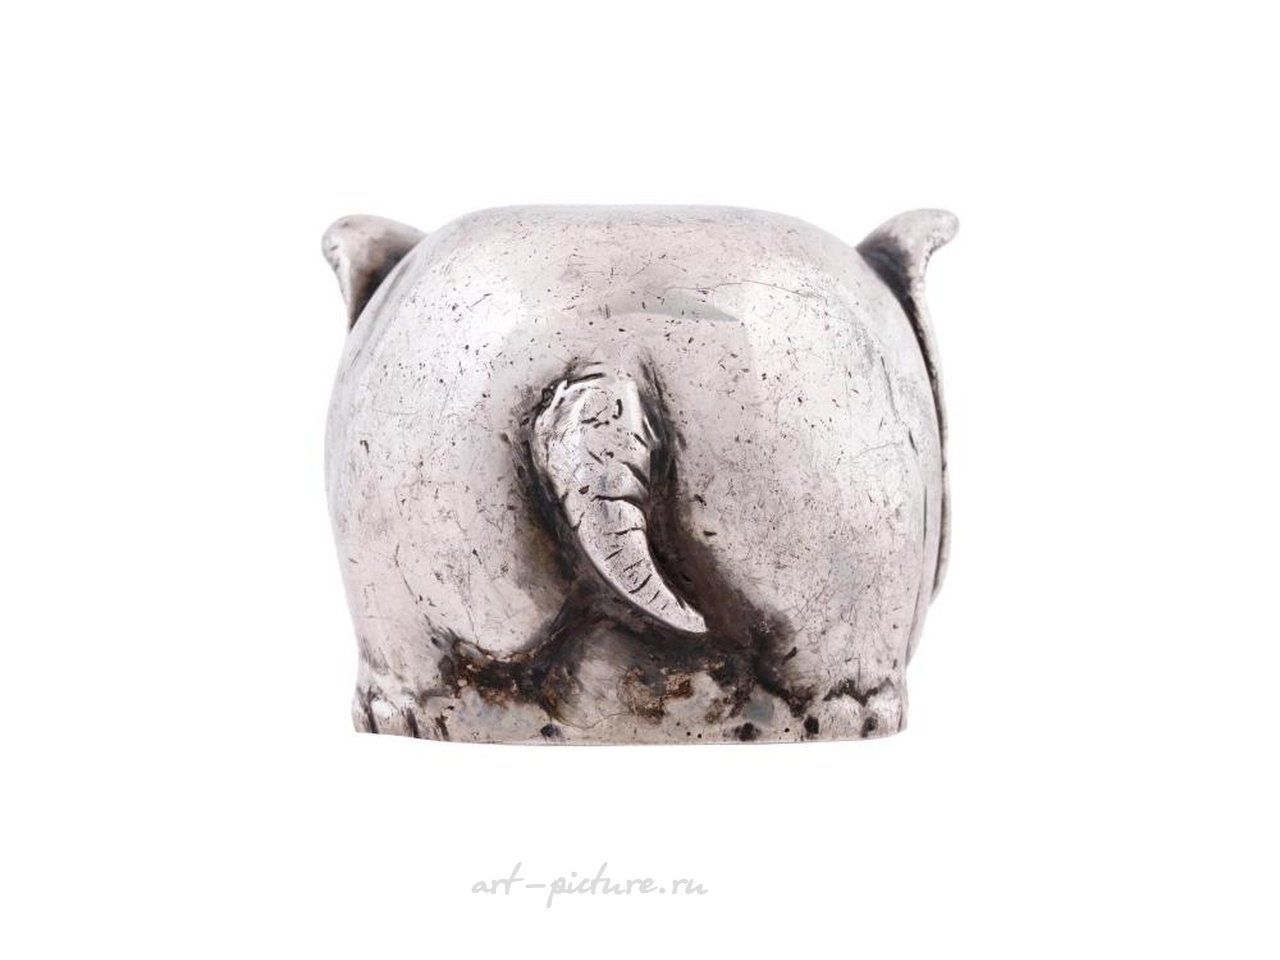 Русское серебро , Фигурная чашечка для стремени из русского серебра, изображающая слона.